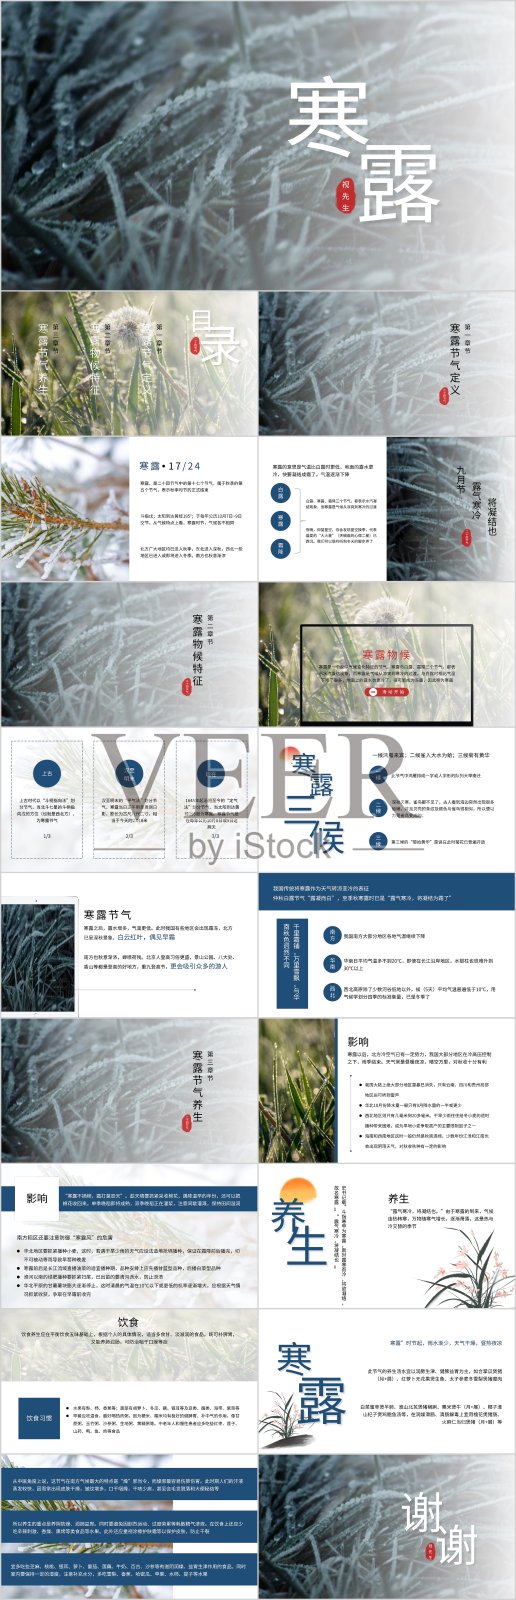 中国风二十四节气寒露公开课PPT模板设计模板素材